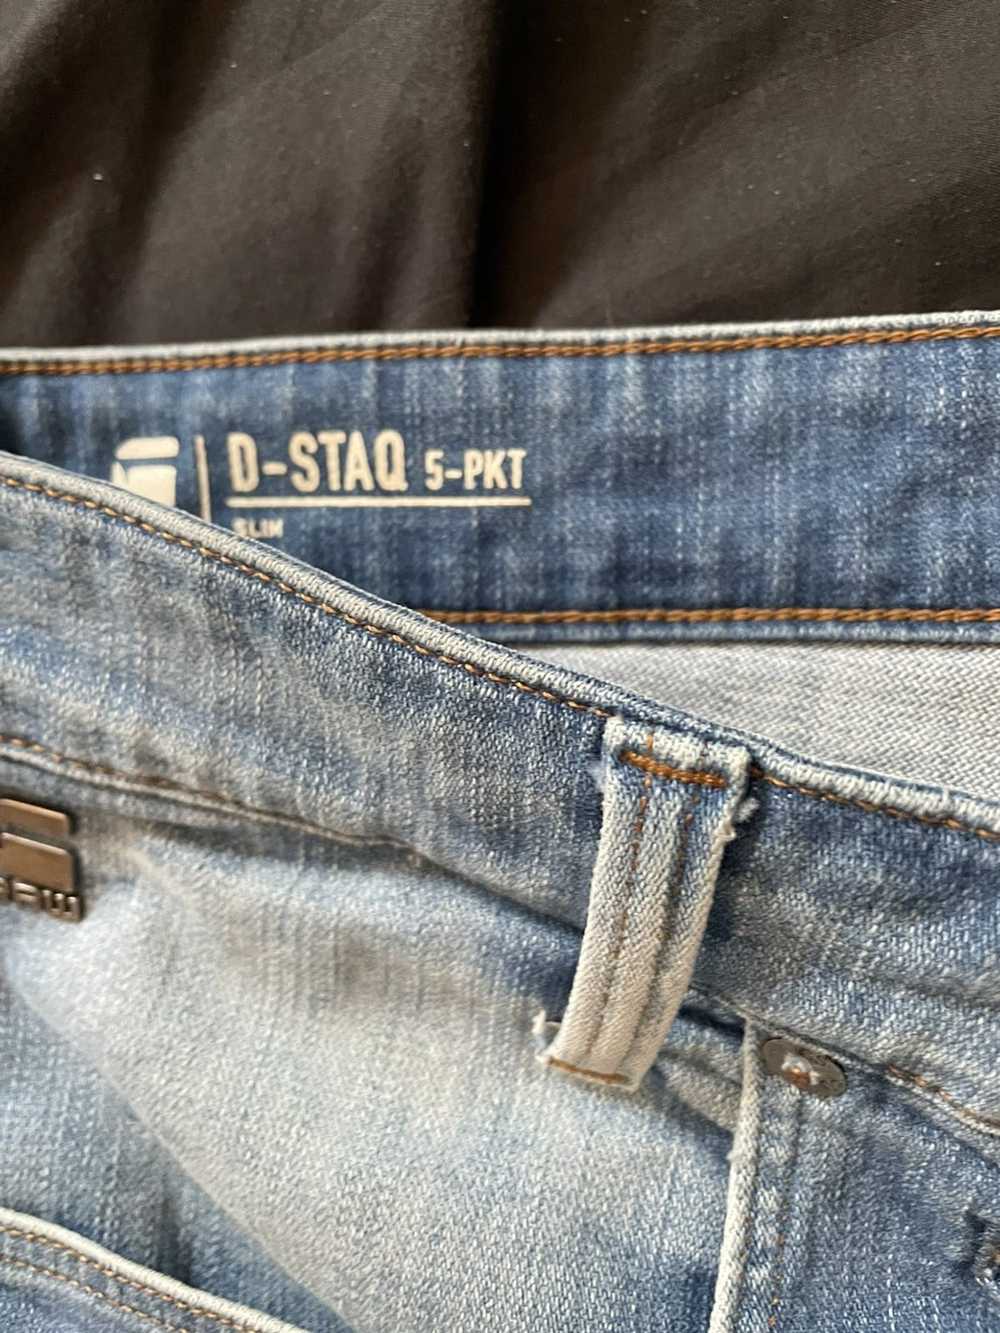 Gstar G STAR RAW StraightShorts Bottoms - image 2